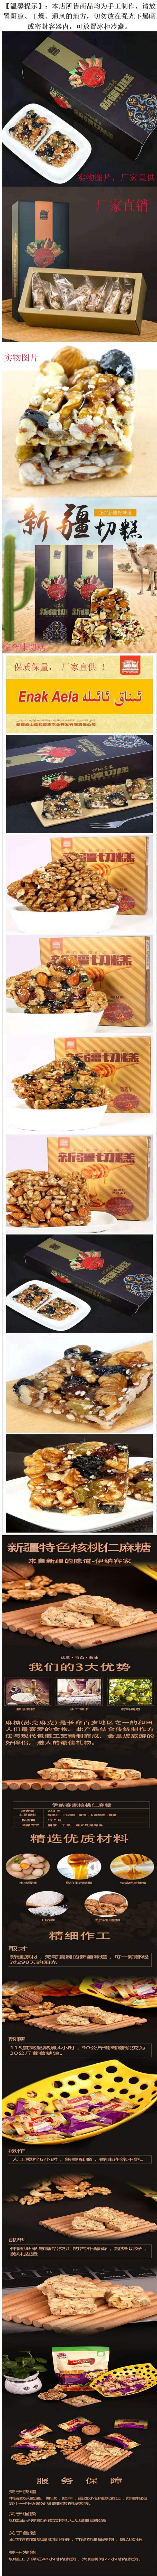 新疆特产  新疆切糕特色食品厂家直销伊纳客家切糕麻糖玛仁糖210g